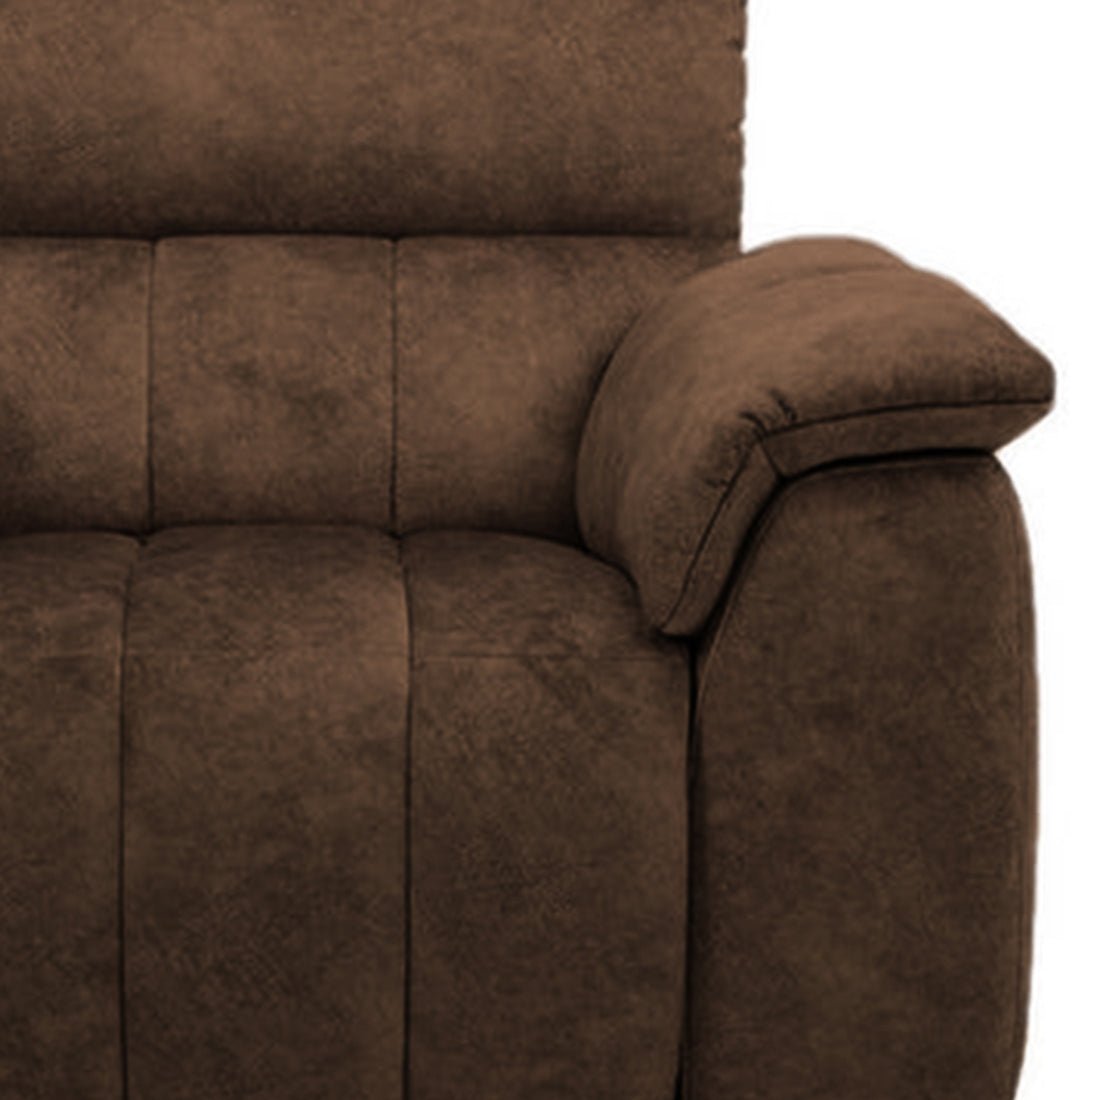 Torque India Casanoy 3 Seater Fabric Sofa for Living Room | 3 Seater Fabric Sofa - Torque India